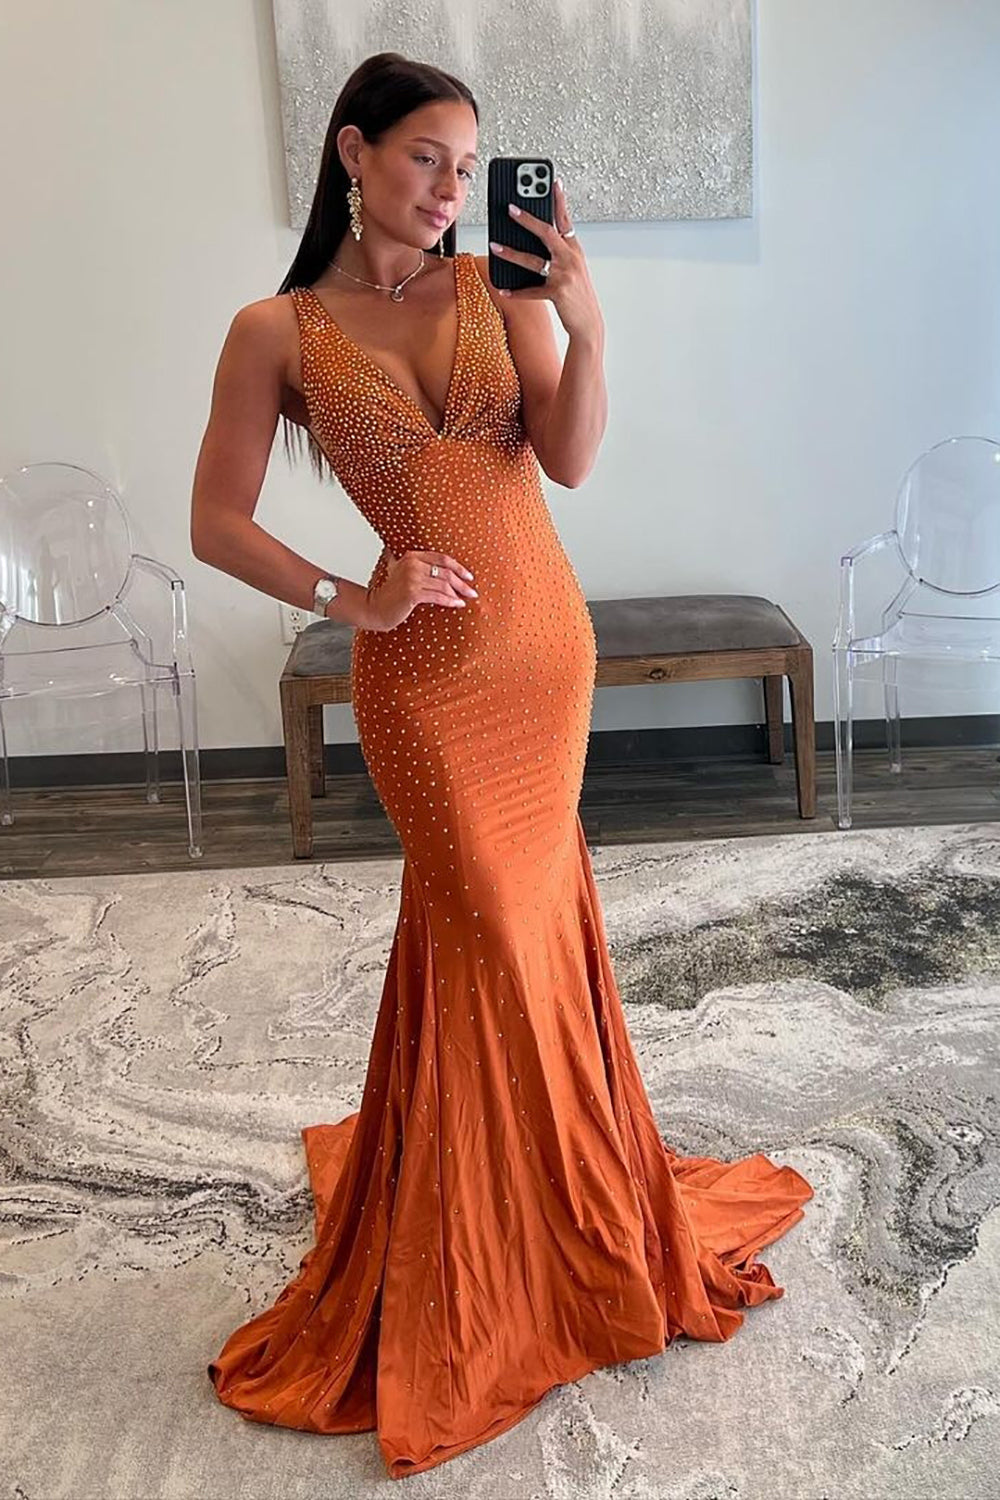 Molly |Mermaid Deep V-Neck Beaded Satin Long Prom Dress